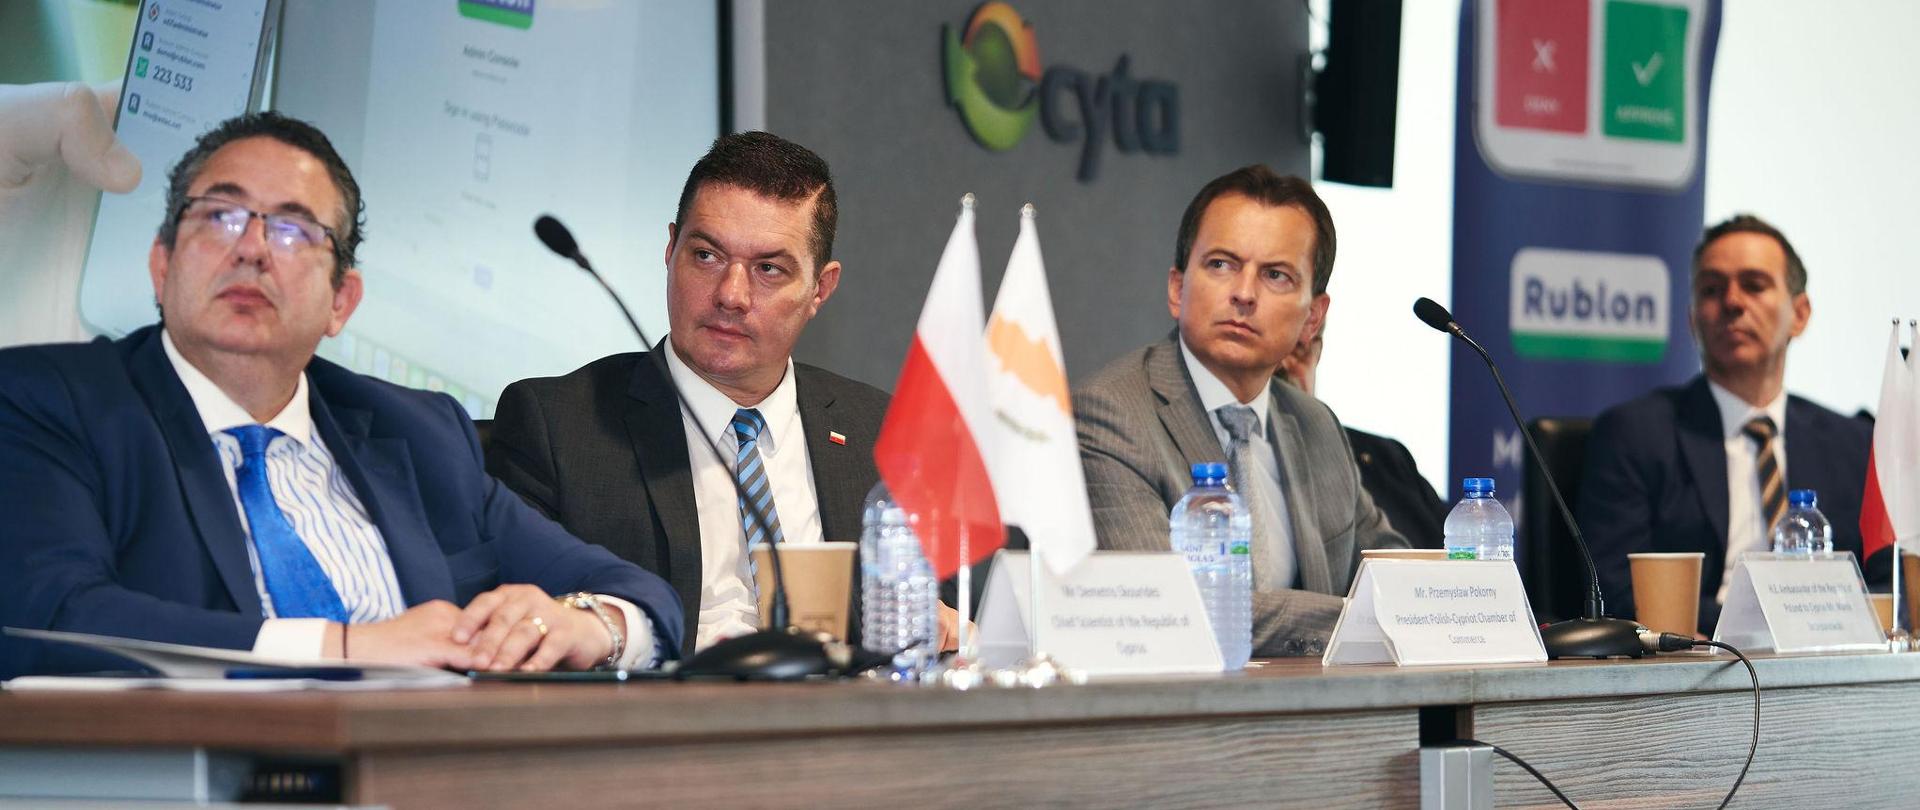 Od lewej: Główny Naukowiec CY, Prezes Polsko Cypryjskiej Izby Gospodarczej, Ambasador RP na Cyprze, Wiceminister ds Badań, Innowacji i Polityki Cyfrowej CY